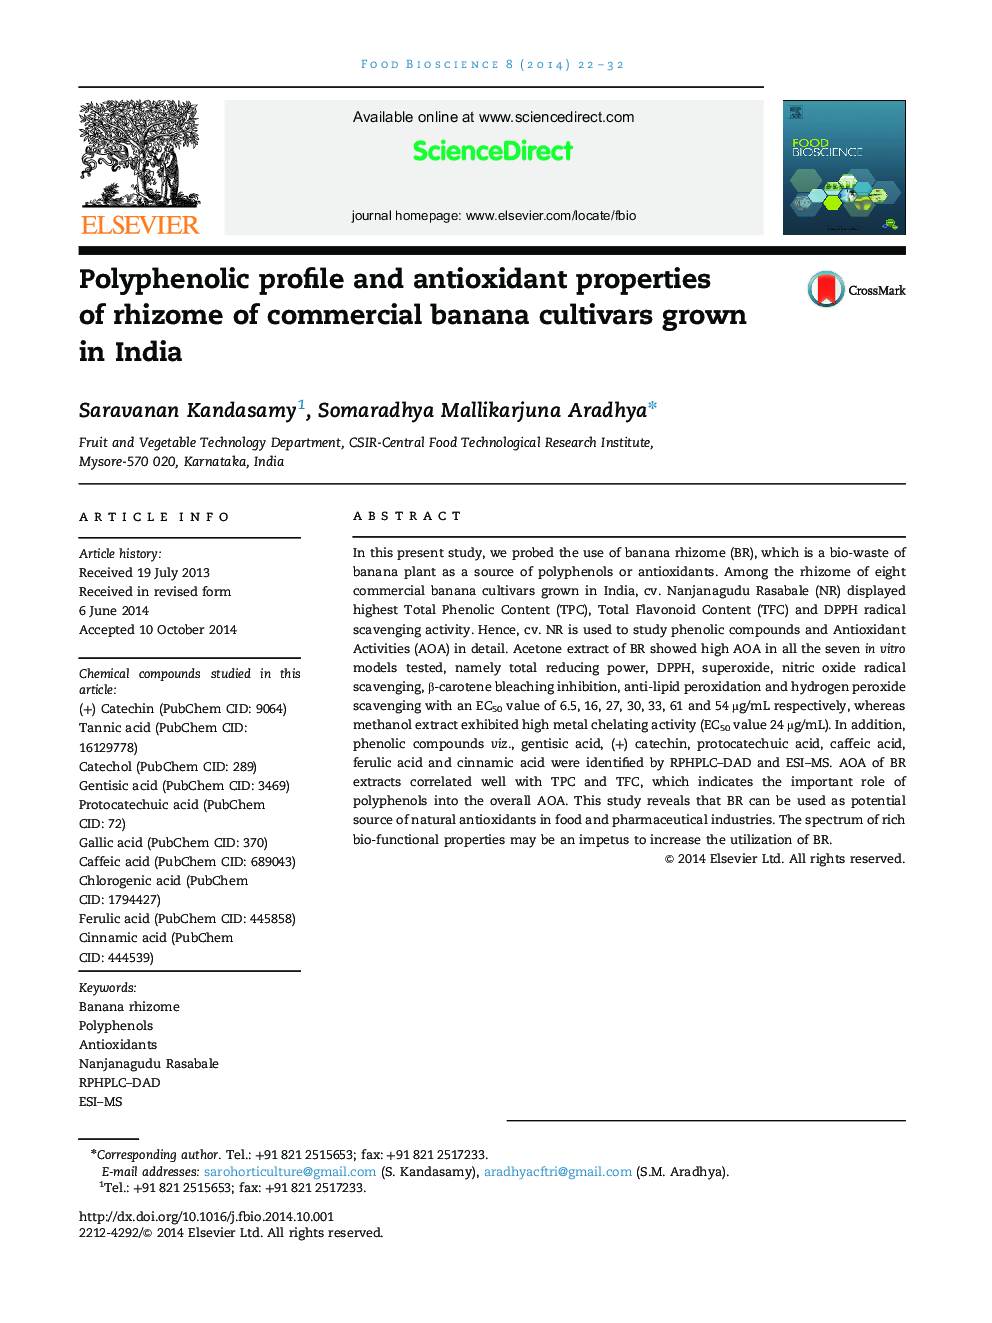 مشخصات پلیفنیک و خواص آنتی اکسیدانی ریزوم ارقام تجاری موز در هندوستان 